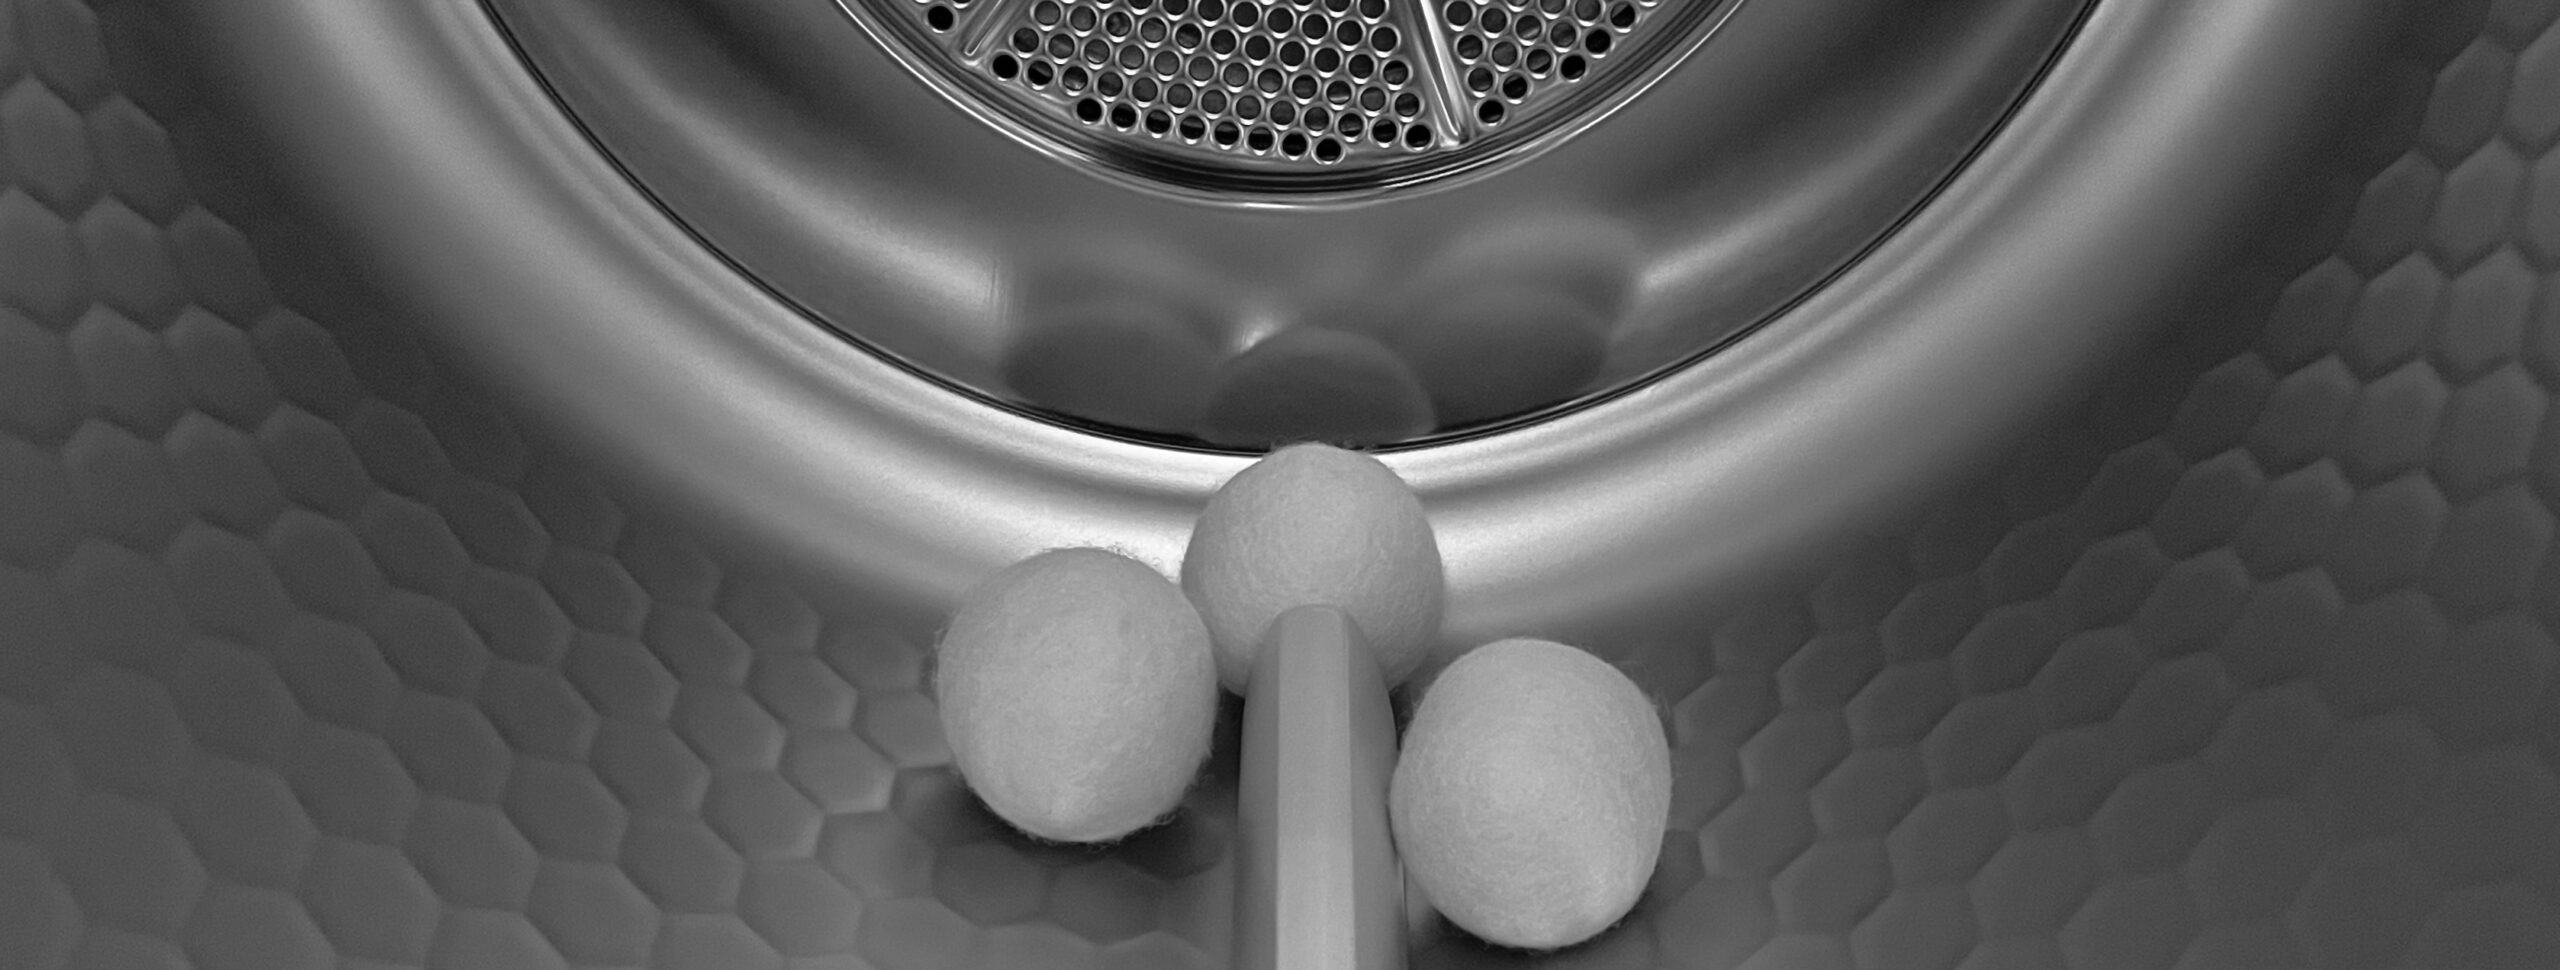 Nachhaltige Wäschepflege ohne Trocknerbälle. Das Bild zeigt diverse Bälle in einer Trocknertrommel